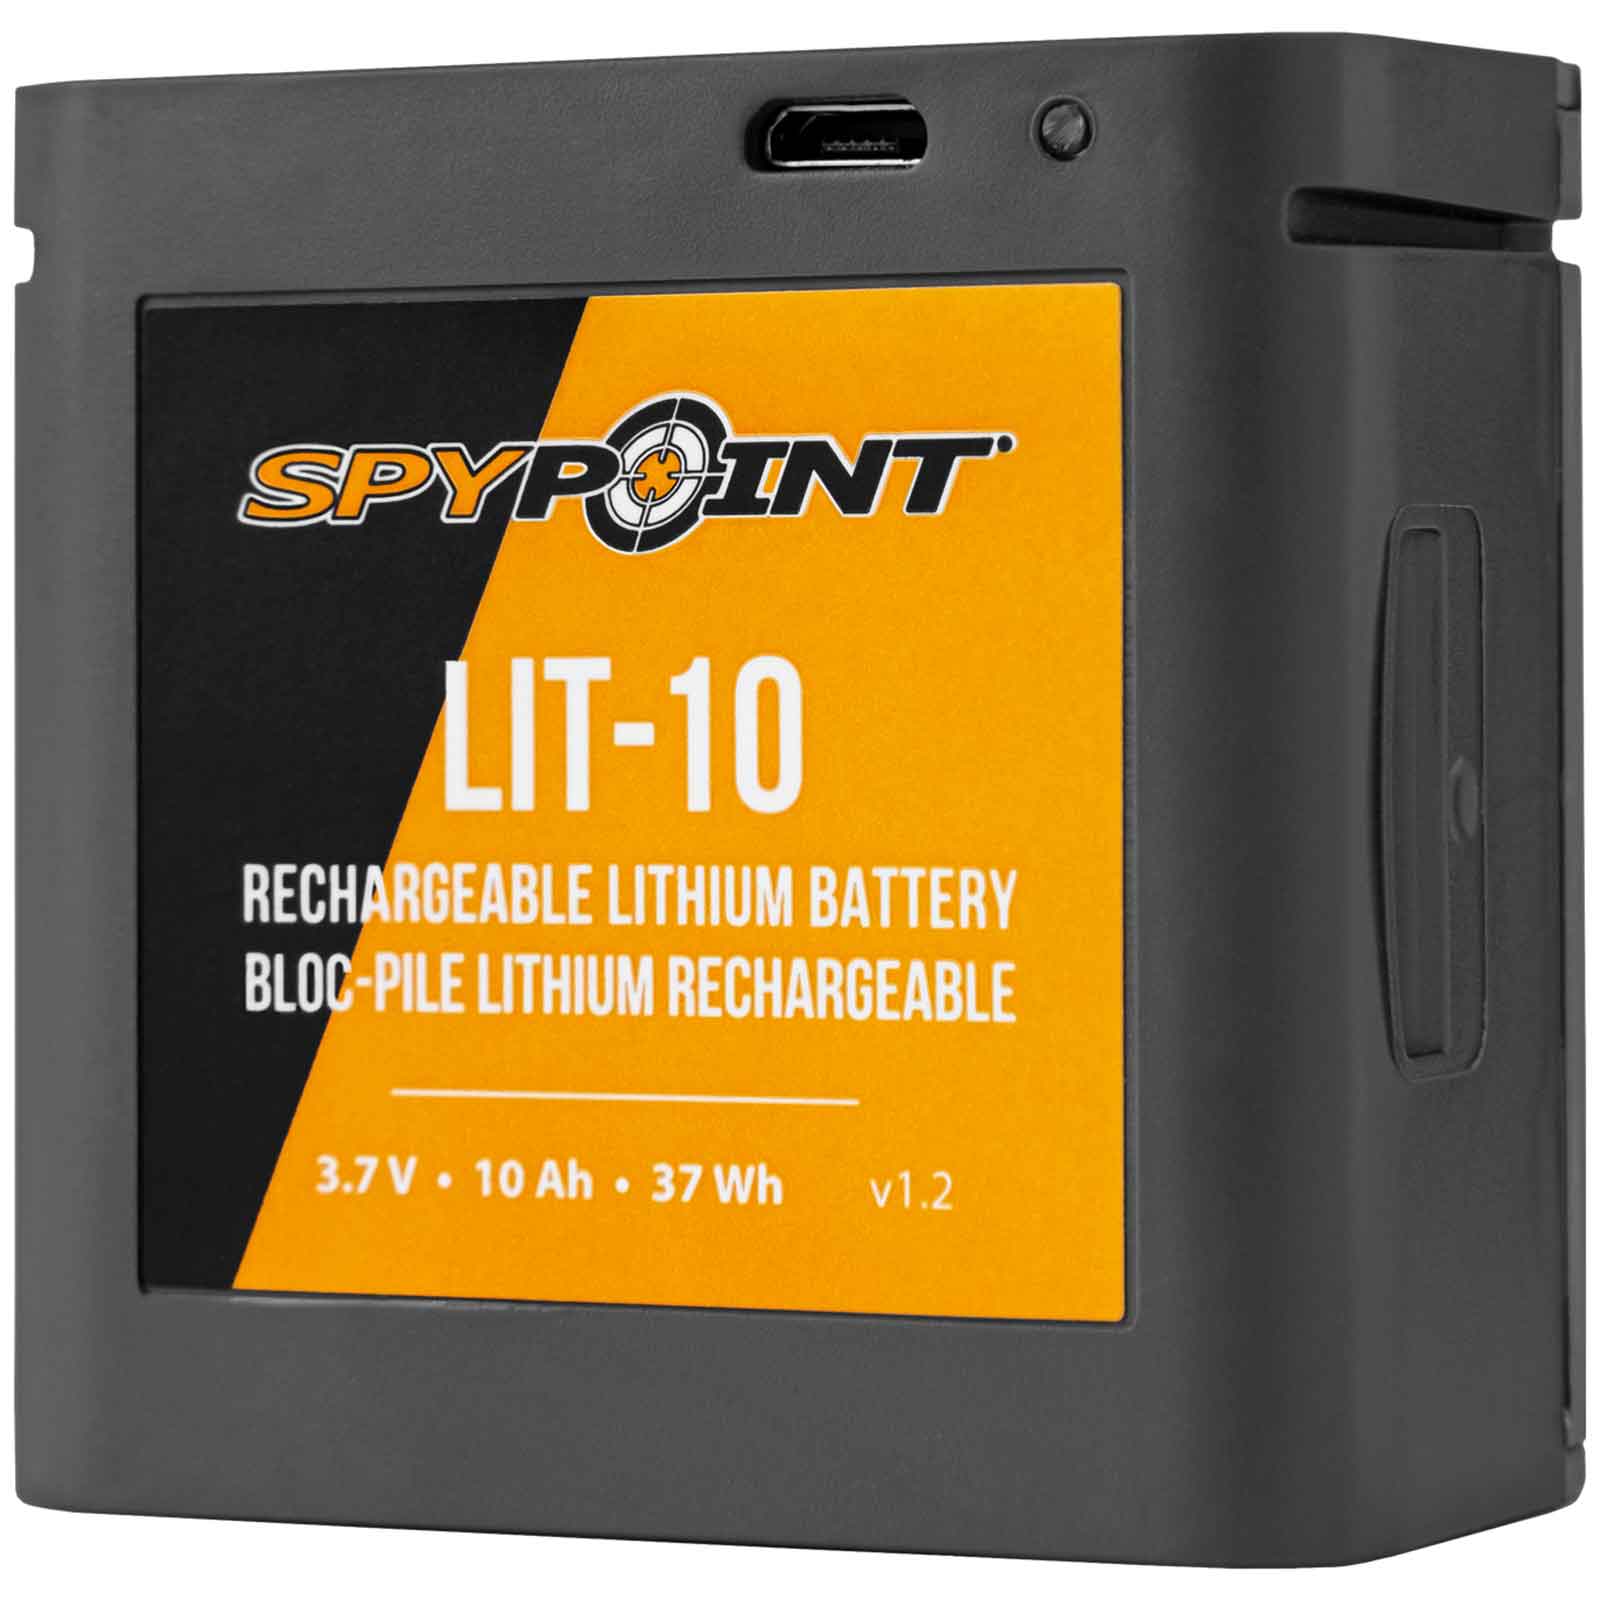 Spypoint litiumbatteripaket LIT-10